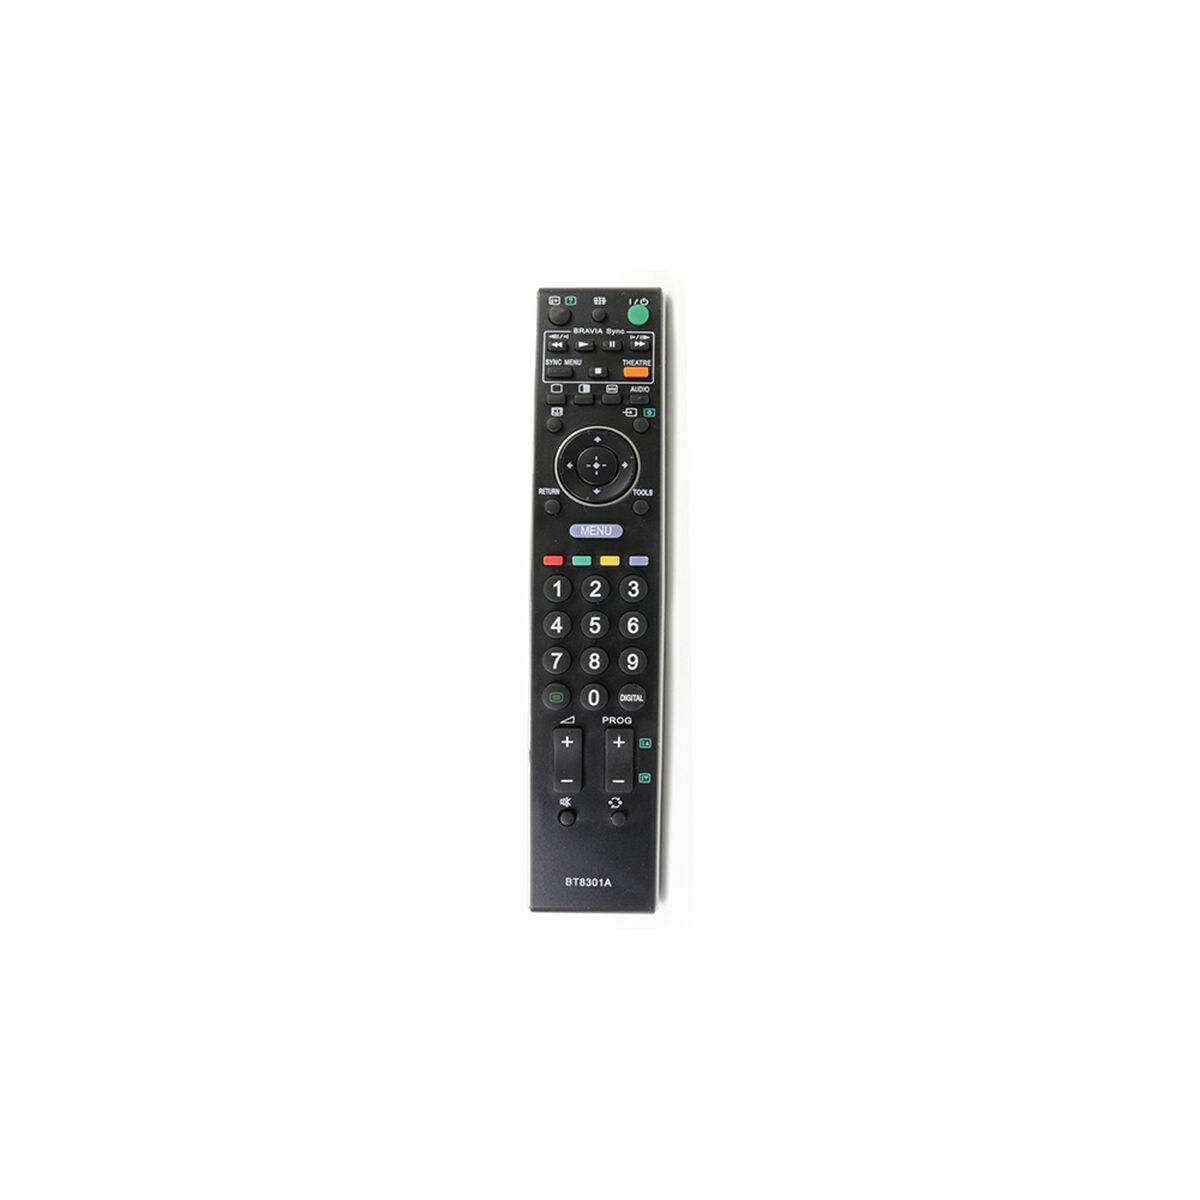 Control Remoto GEN BT8301A para TV Sony